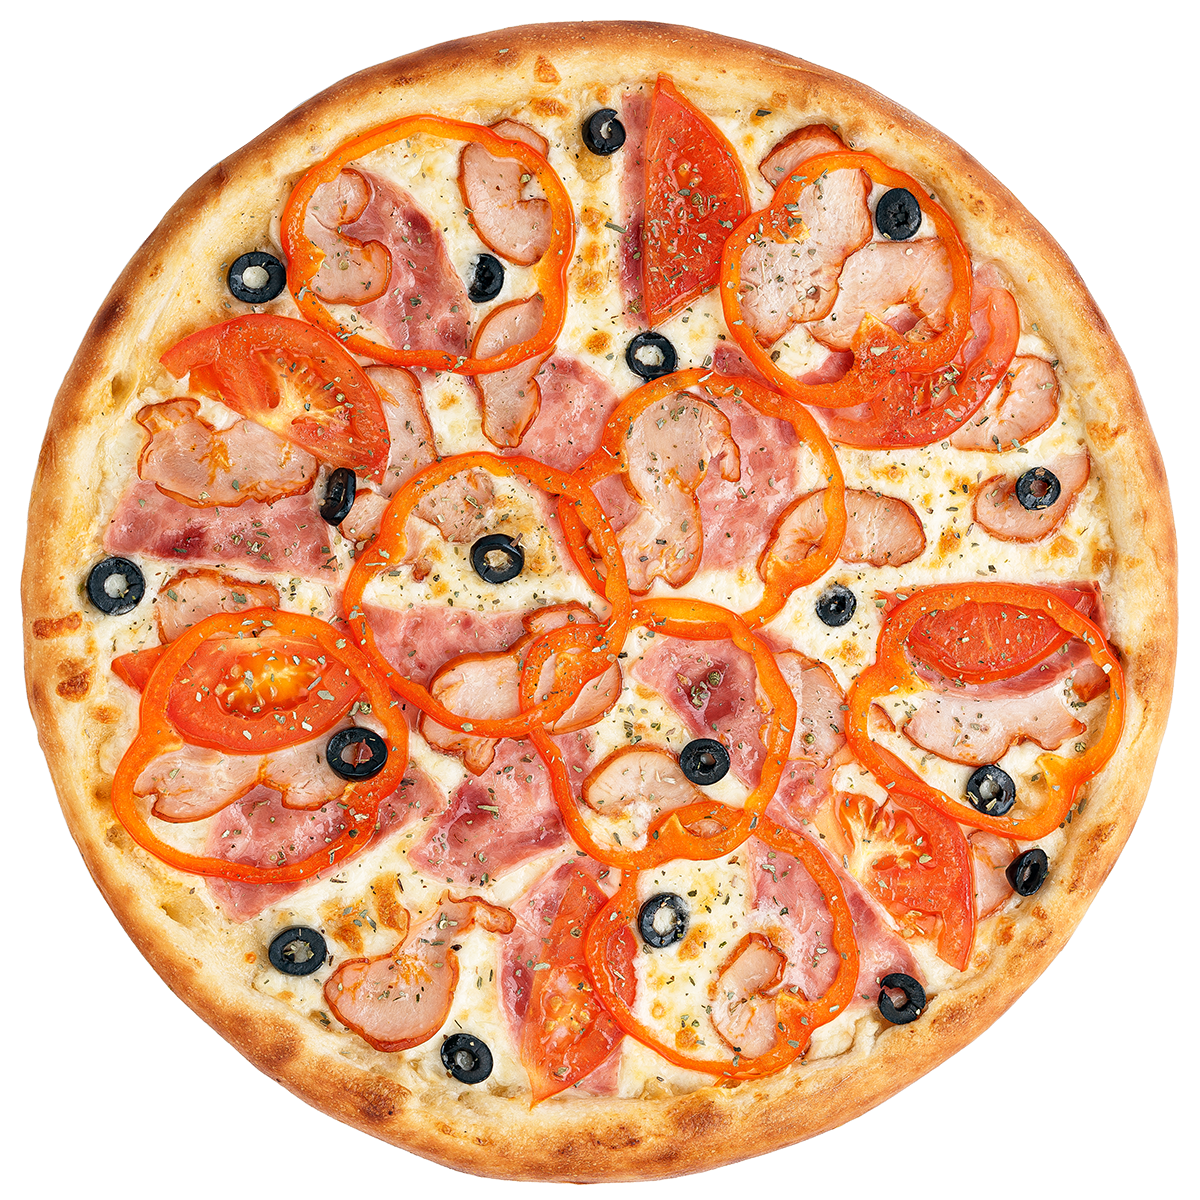 одна пицца с половиной кукурузы и половиной креветок вторая пицца с половиной соуса половиной сыра фото 86